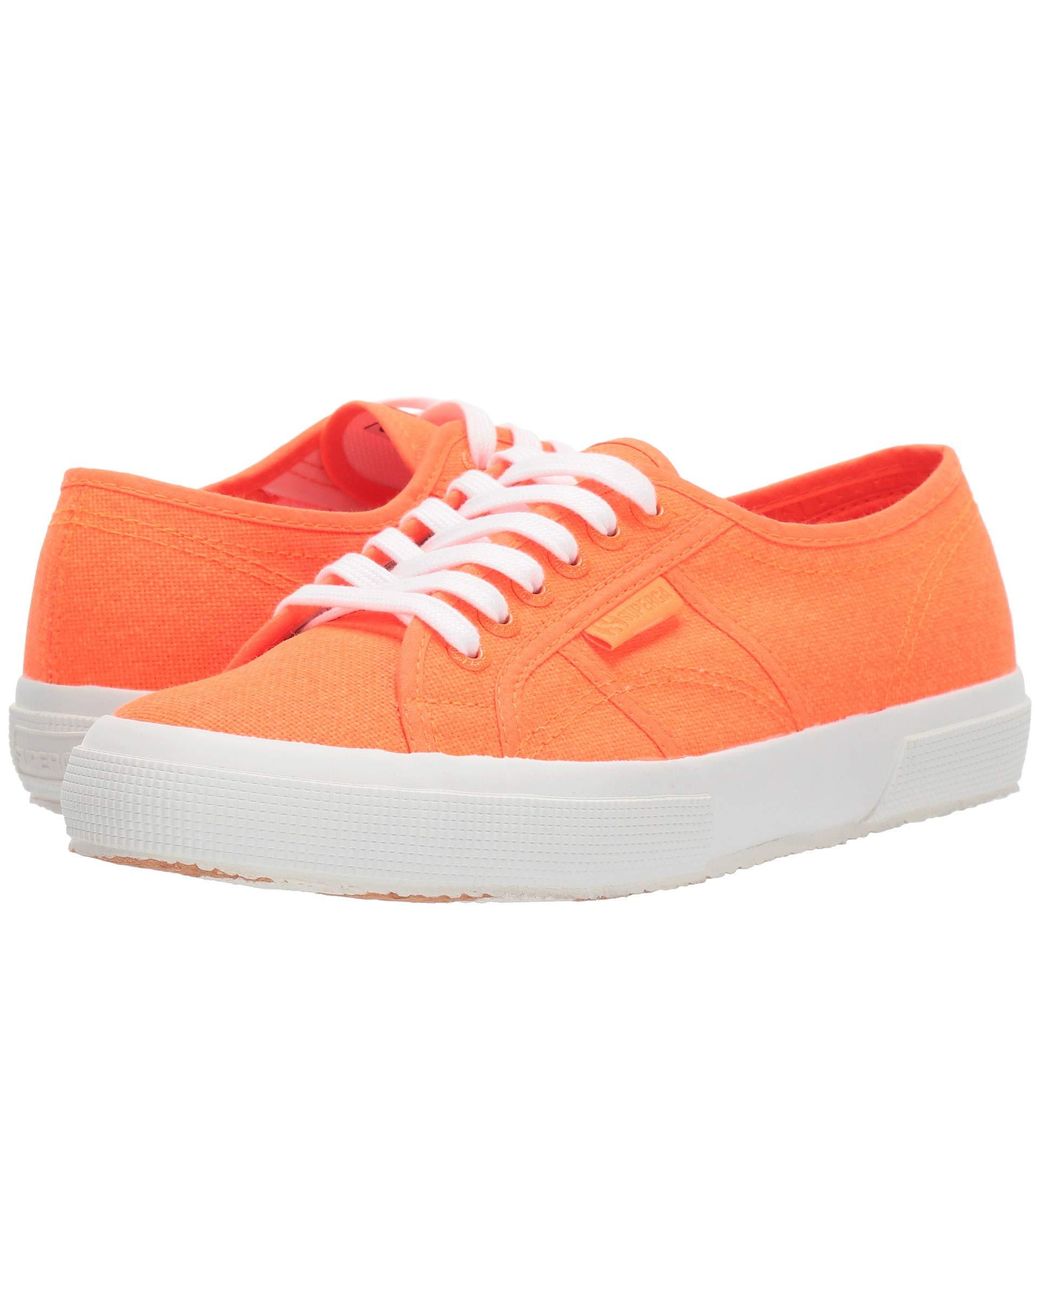 Superga Cotton 2750 Cotu Classic Sneaker in Orange Neon (Orange) - Lyst